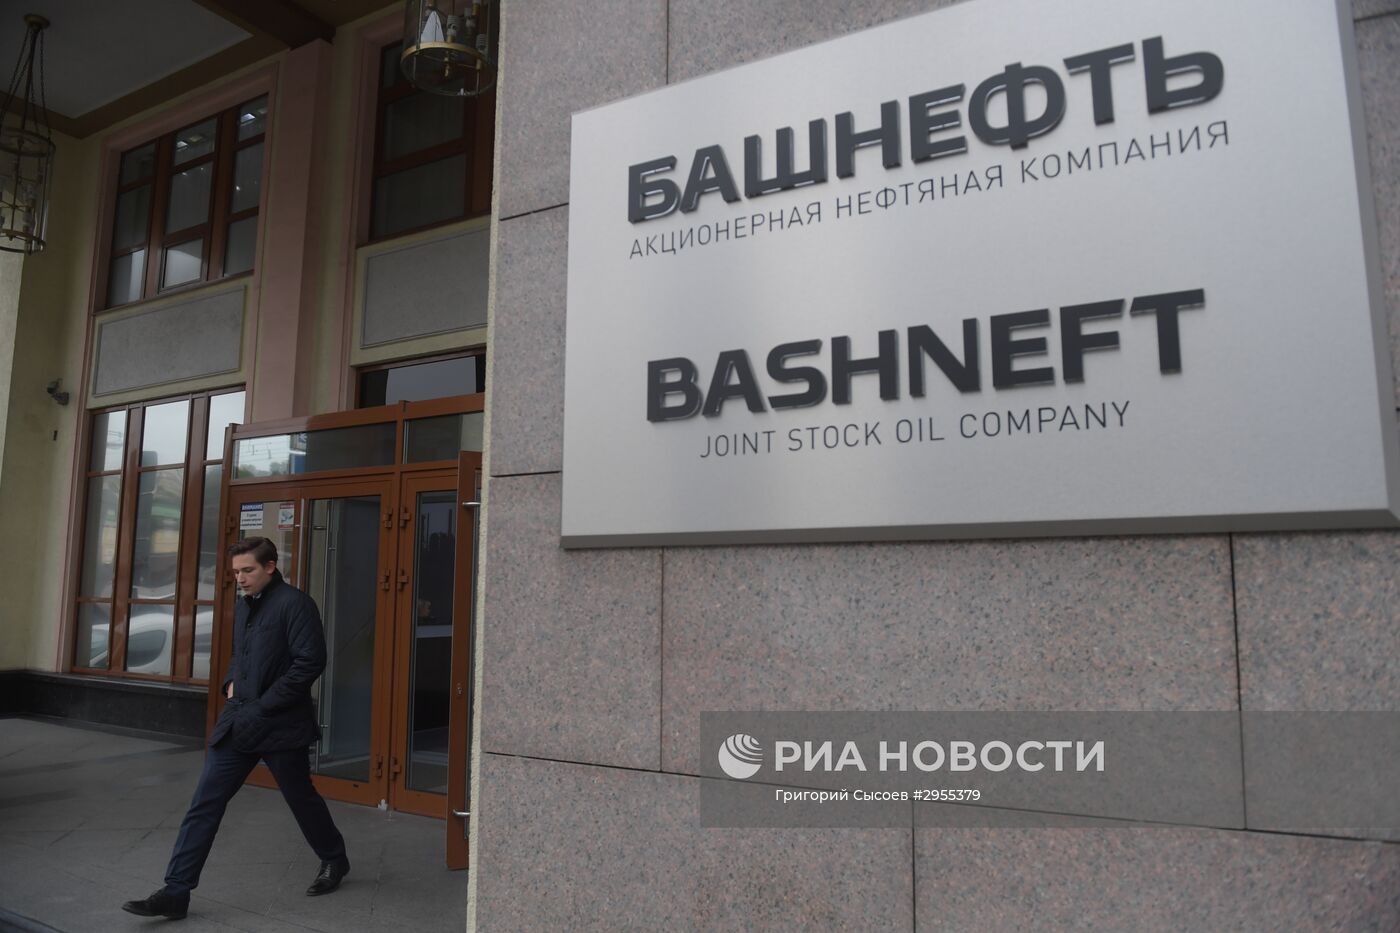 Офис нефтяной компании "Башнефть" в Москве